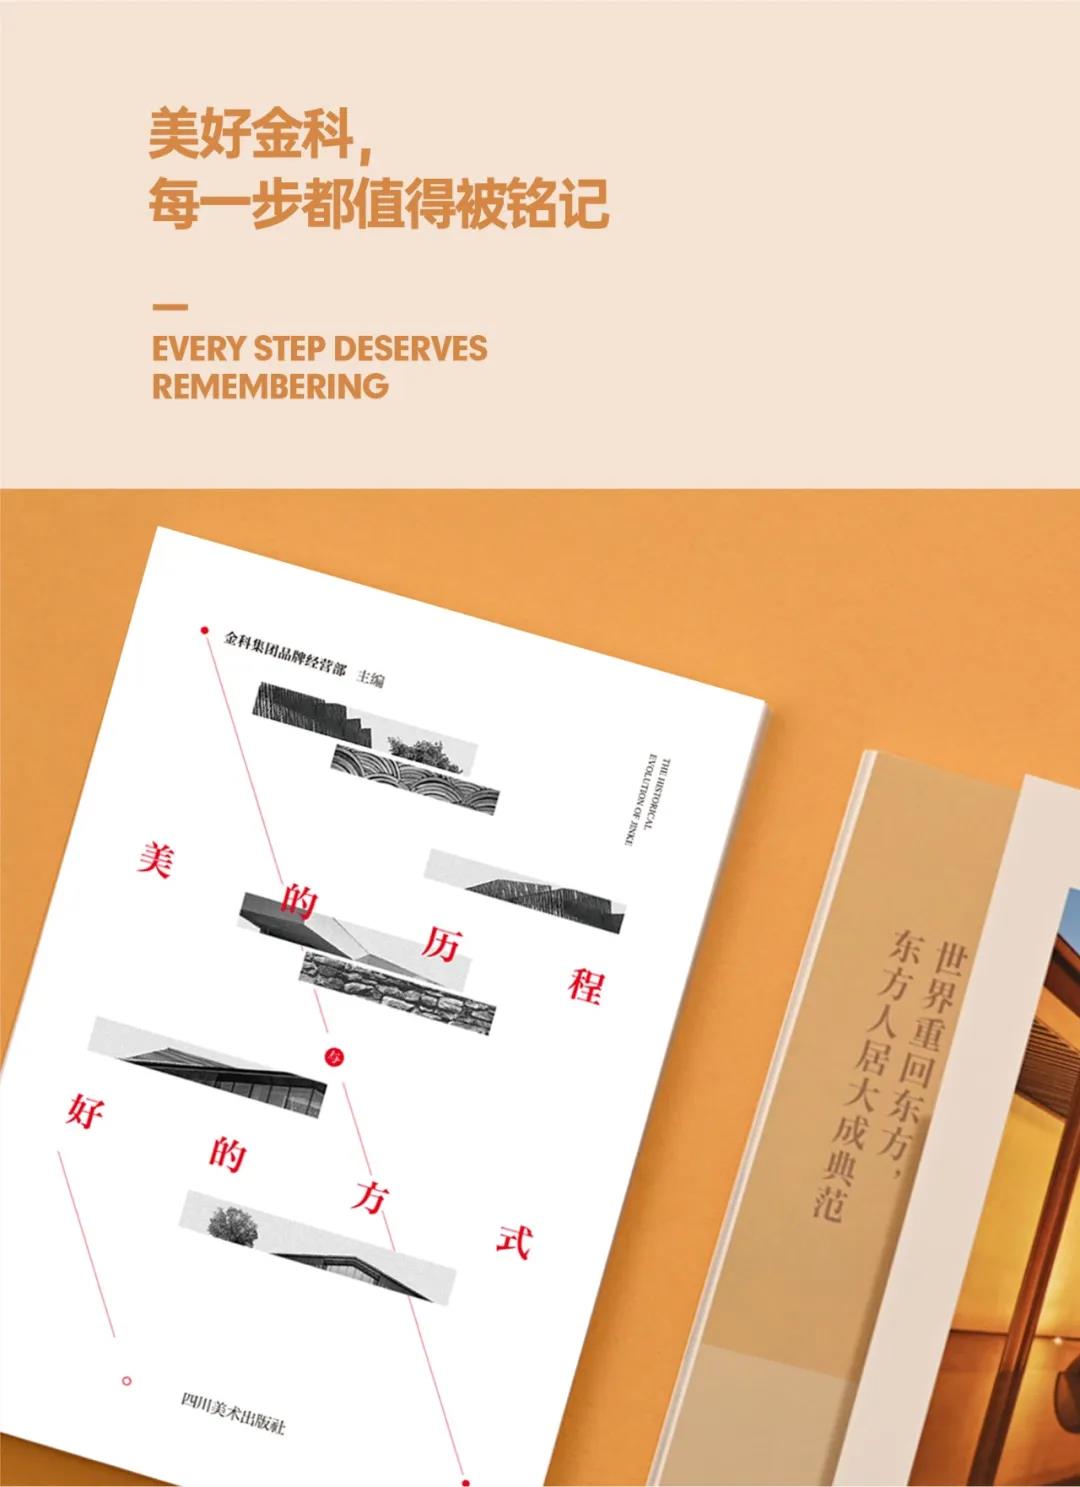 这本凝练了金科22年产品造诣之精华的设计集 现已出版-中国网地产